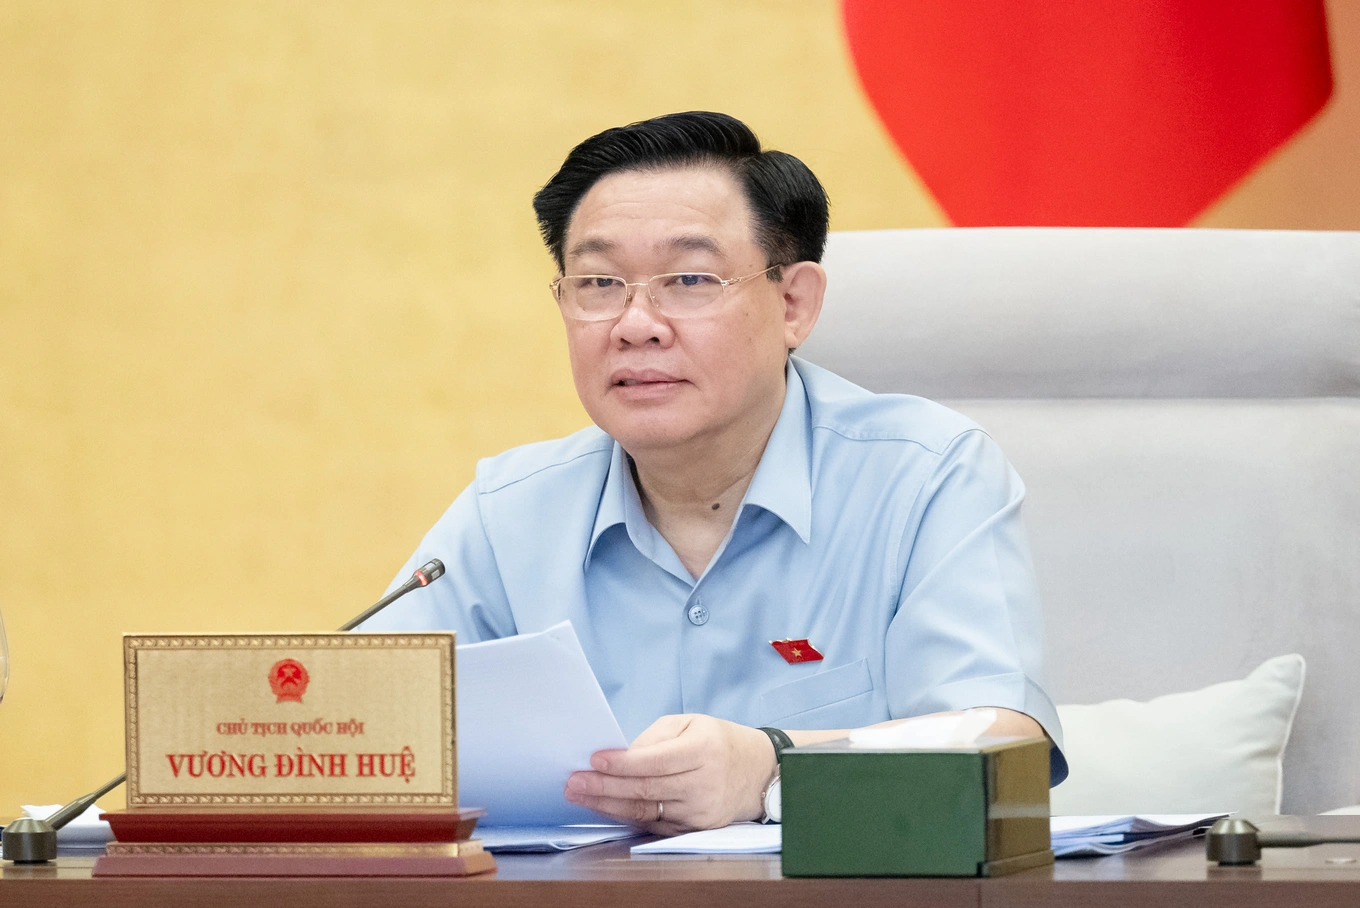 Chủ tịch Quốc hội Vương Đình Huệ phát biểu tại phiên họp (Ảnh: Hồng Phong).